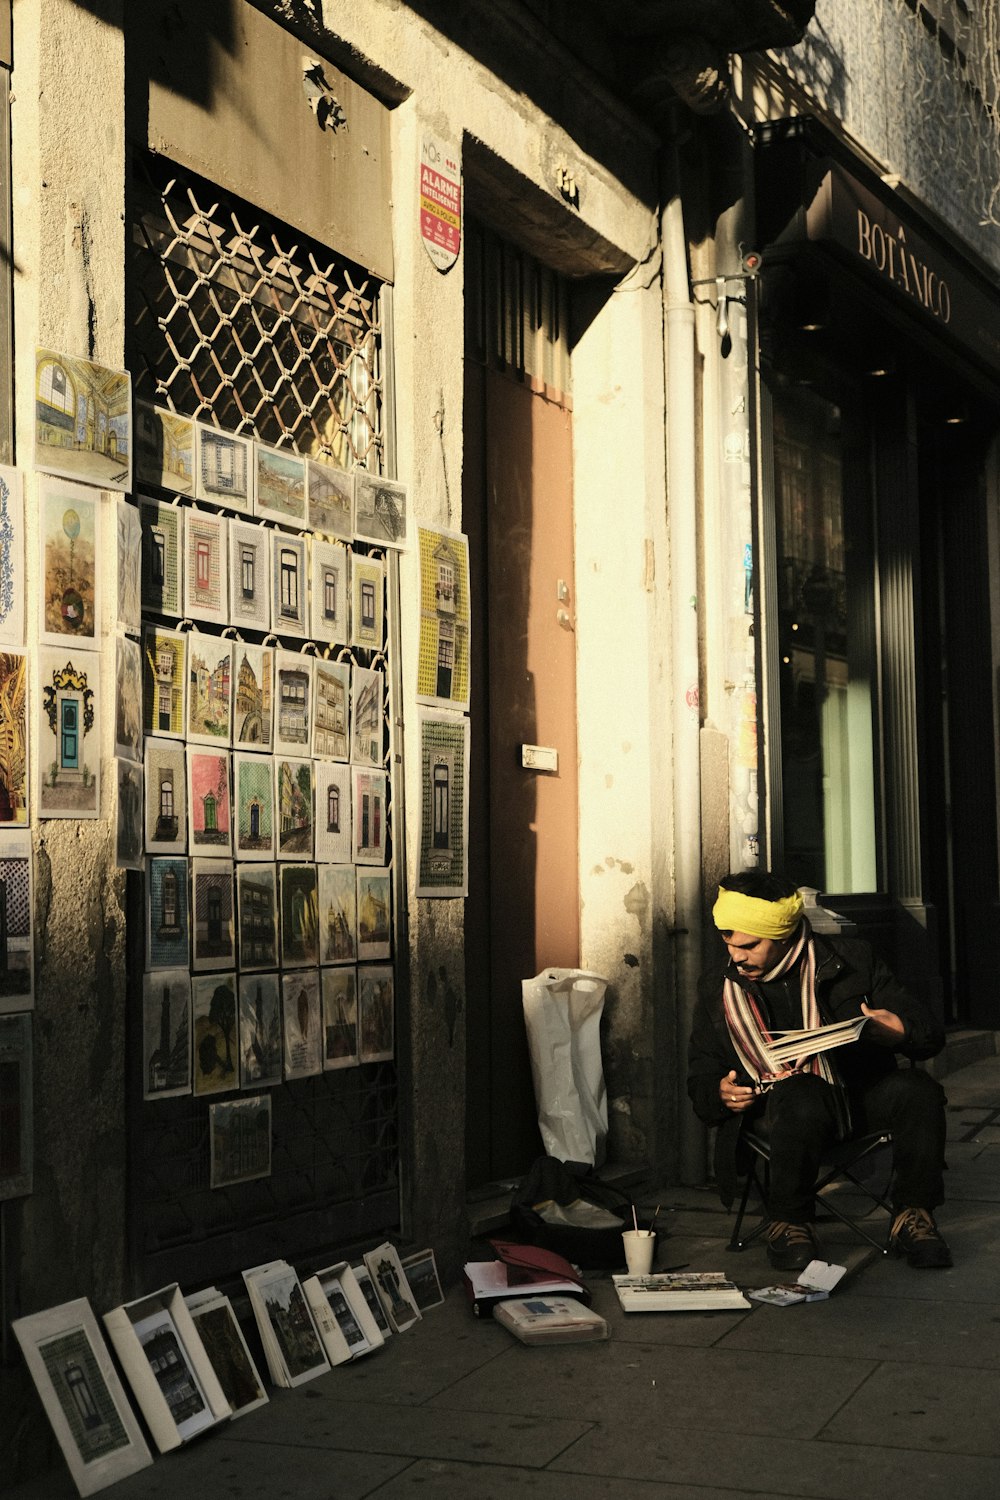 a man sitting on a sidewalk reading a newspaper